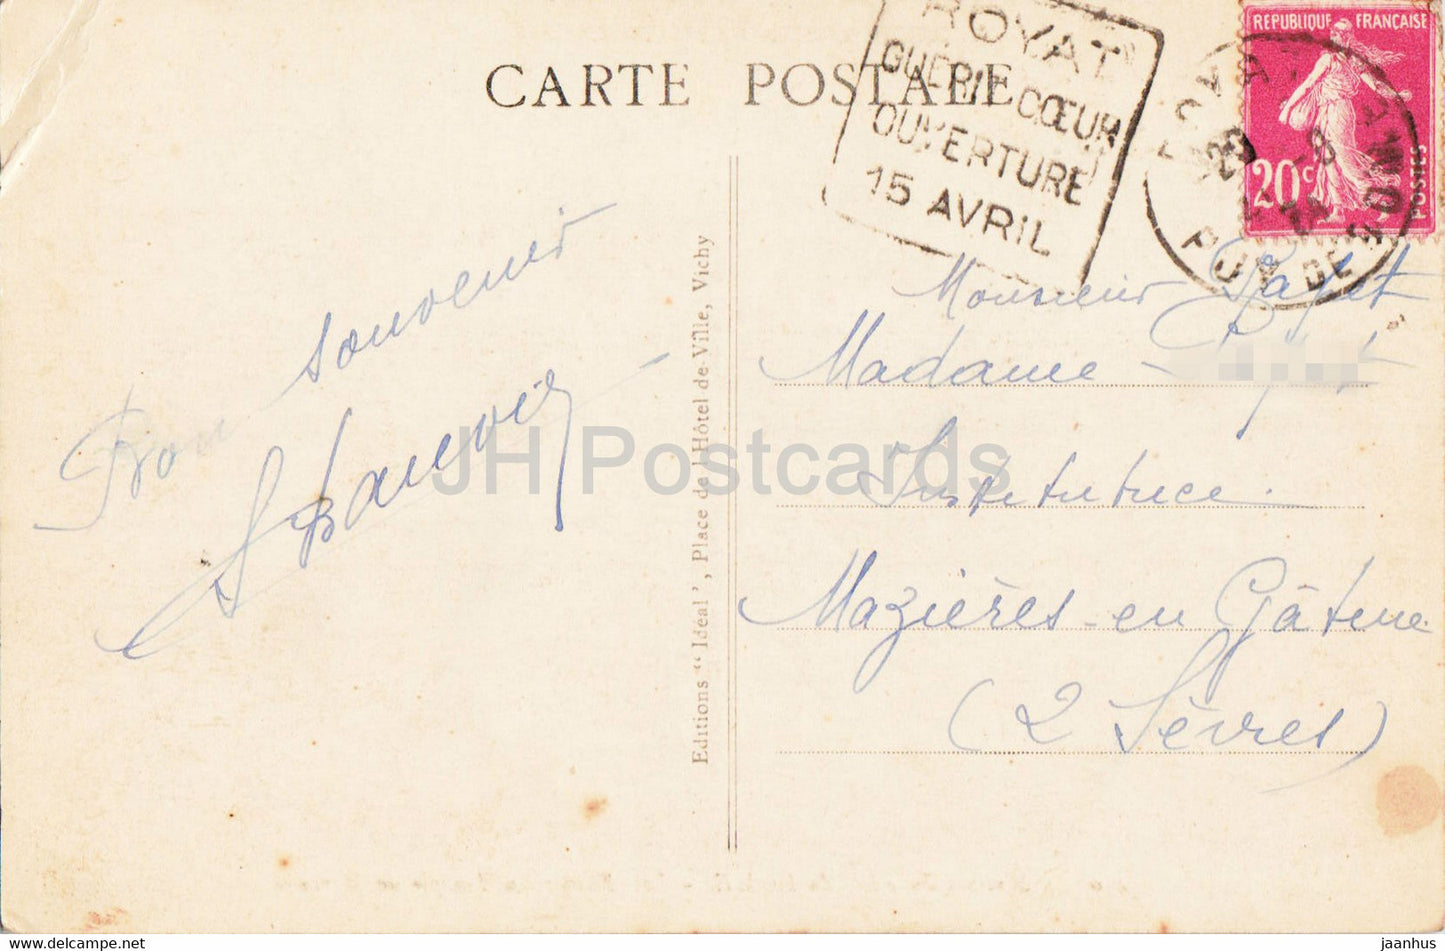 Sommet du Puy de Dome - Les Ruines du Temple de Mercure - 4304 - alte Postkarte - 1934 - Frankreich - gebraucht